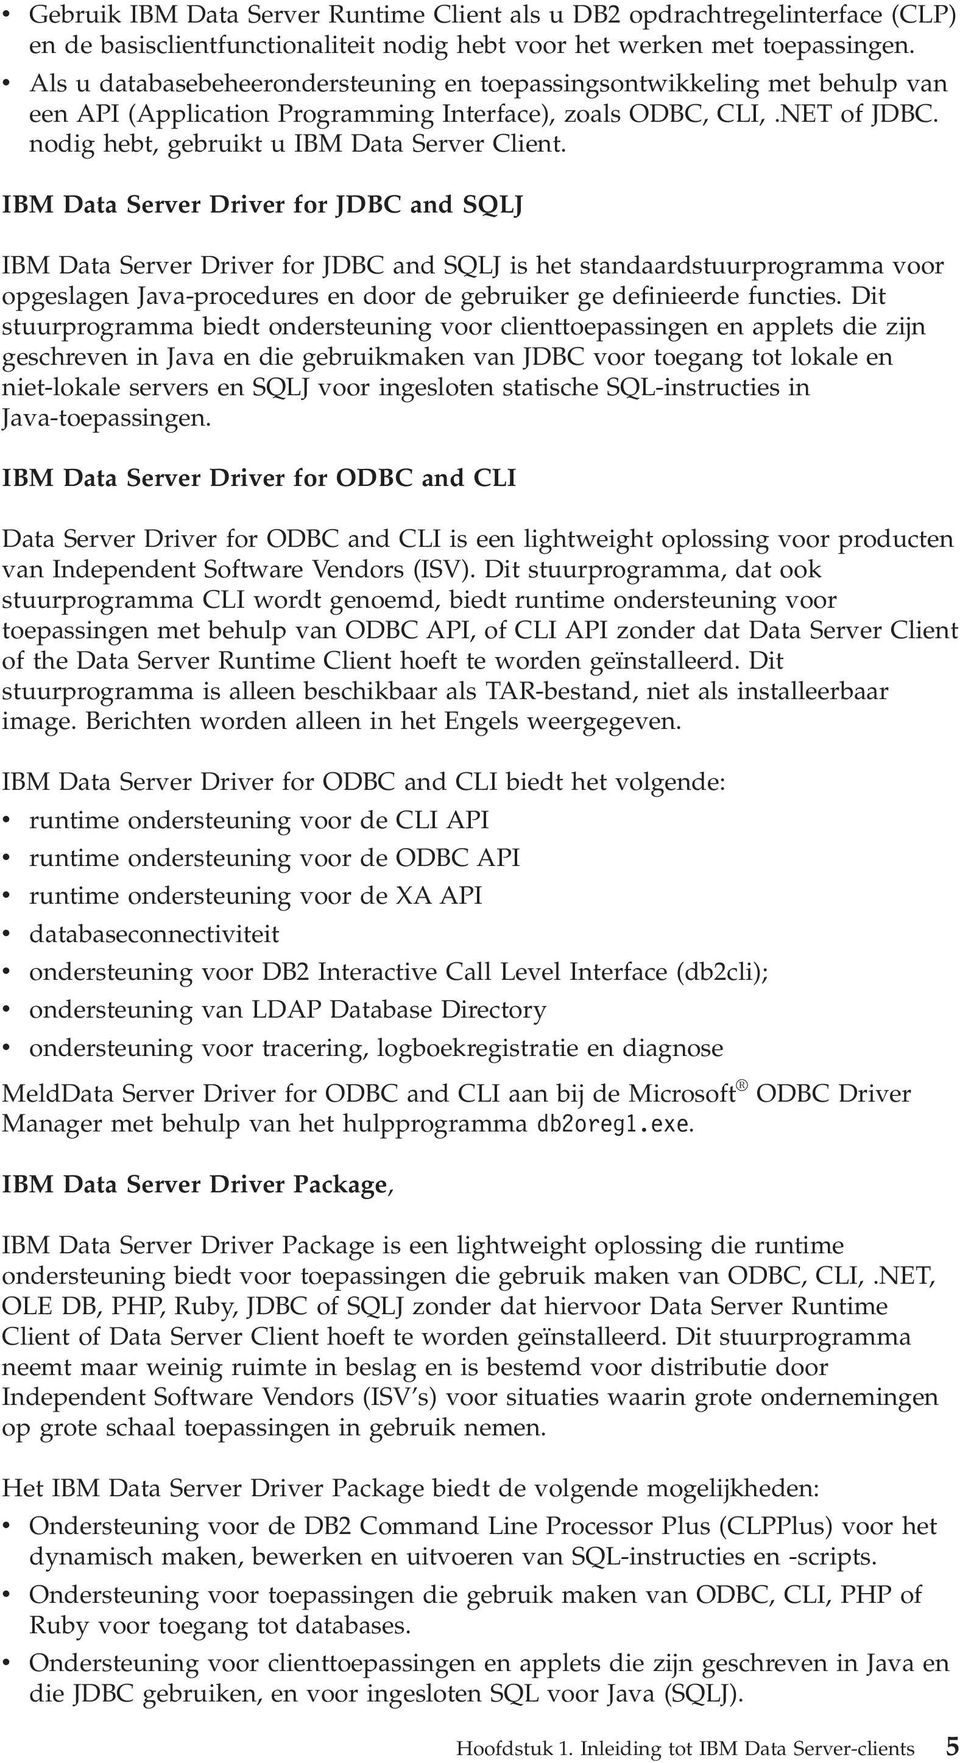 IBM Data Serer Drier for JDBC and SQLJ IBM Data Serer Drier for JDBC and SQLJ is het standaardstuurprogramma oor opgeslagen Jaa-procedures en door de gebruiker ge definieerde functies.